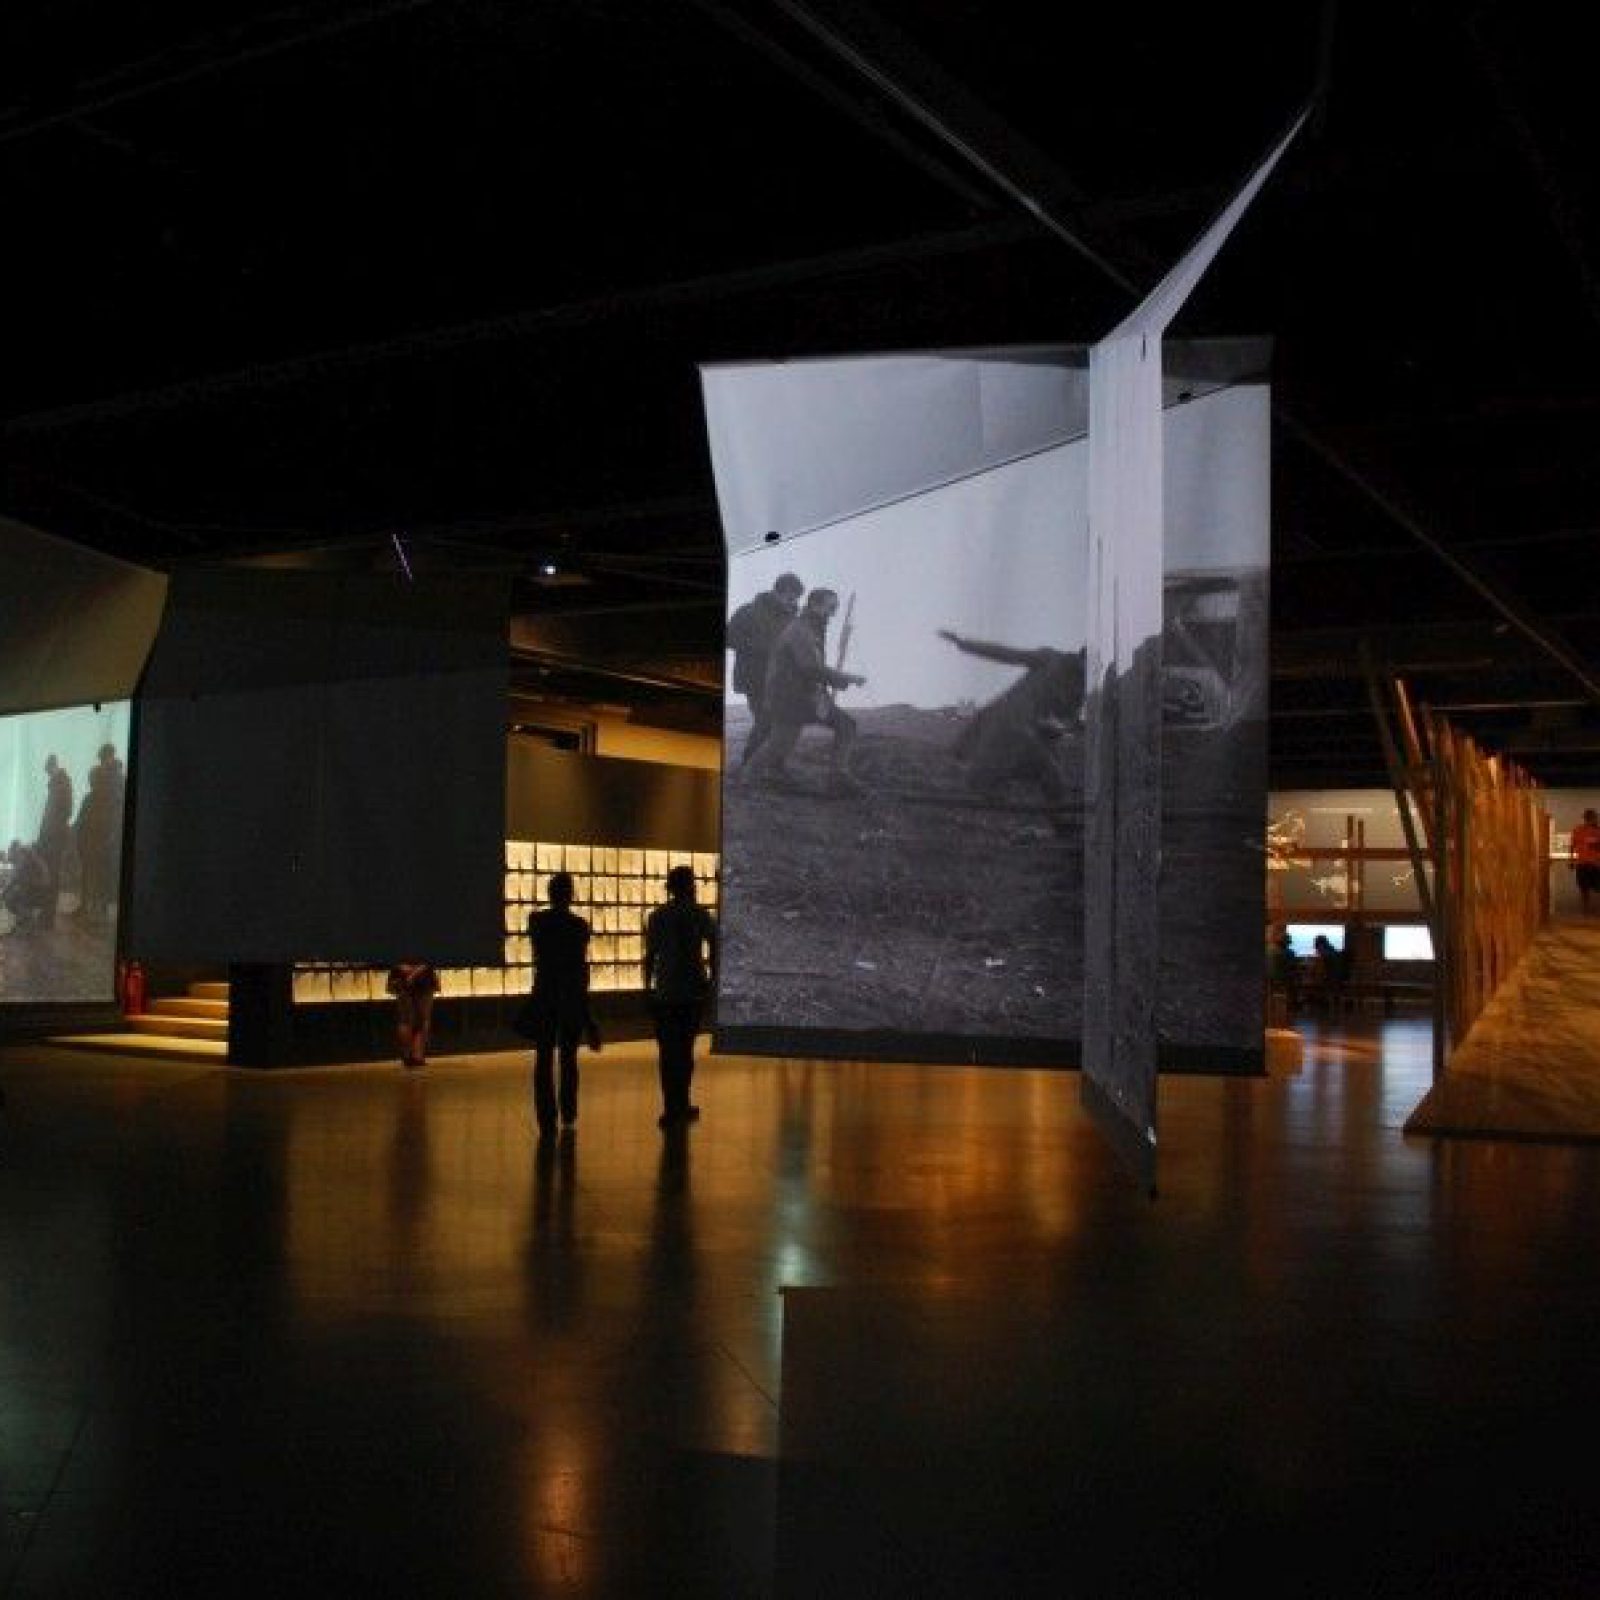 Exposición "La invención de un mar: Amereida 1965-2017", en el Museo Nacional de Bellas Artes, Santiago de Chile (13 enero – 19 marzo, 2017). Foto: © Corporación Cultural Amereida